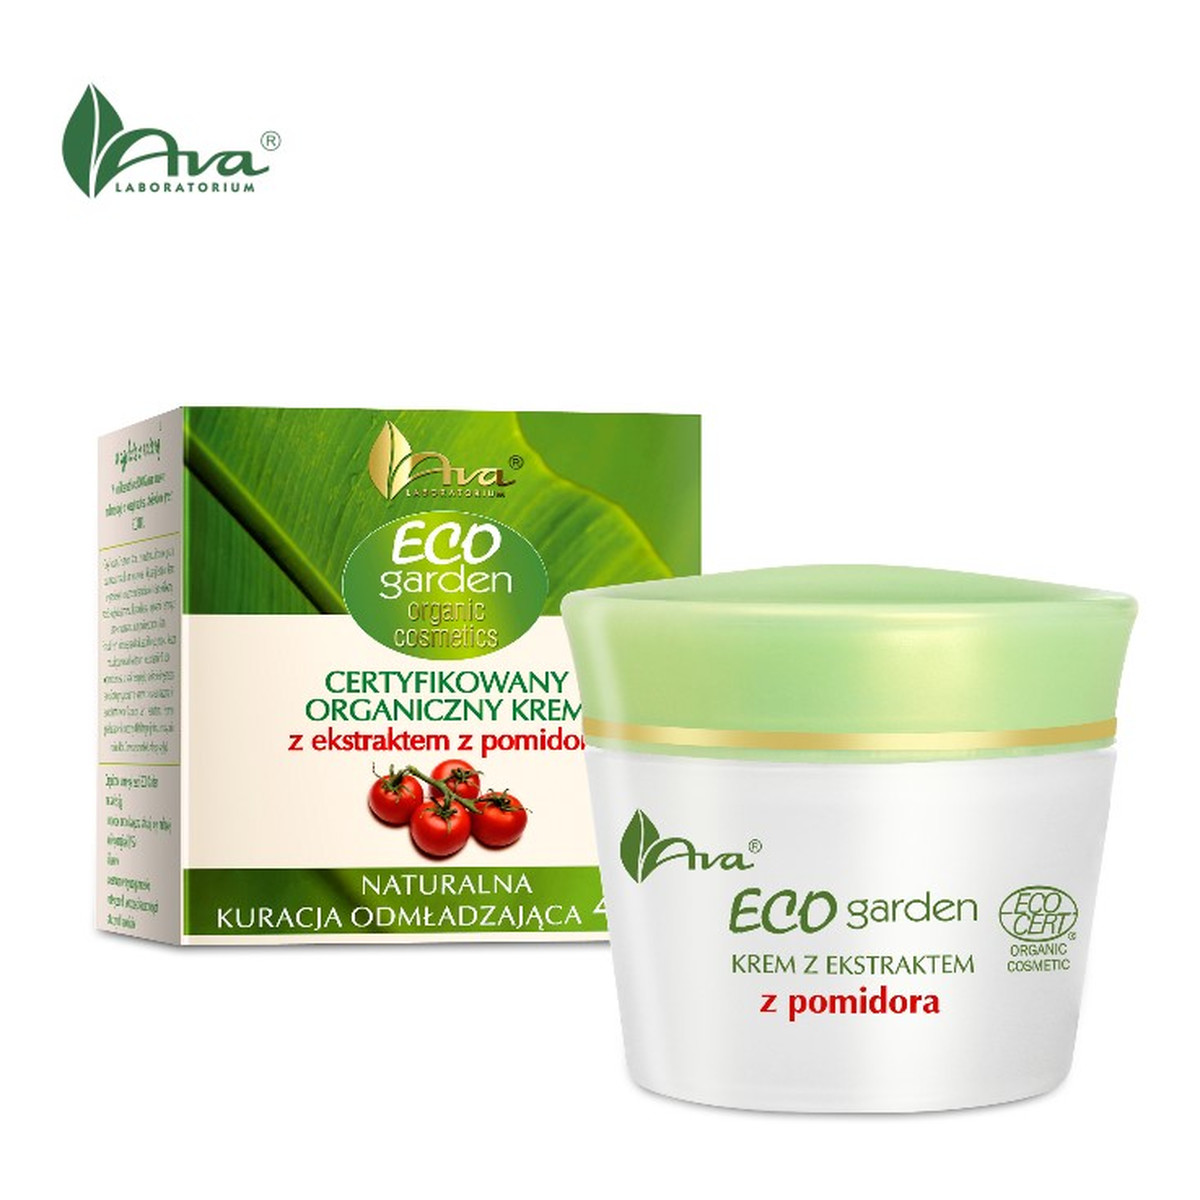 Ava Laboratorium ECO Garden Certyfikowany organiczny krem z ekstraktem z pomidora - Naturalna kuracja odmładzająca 40+ 50ml